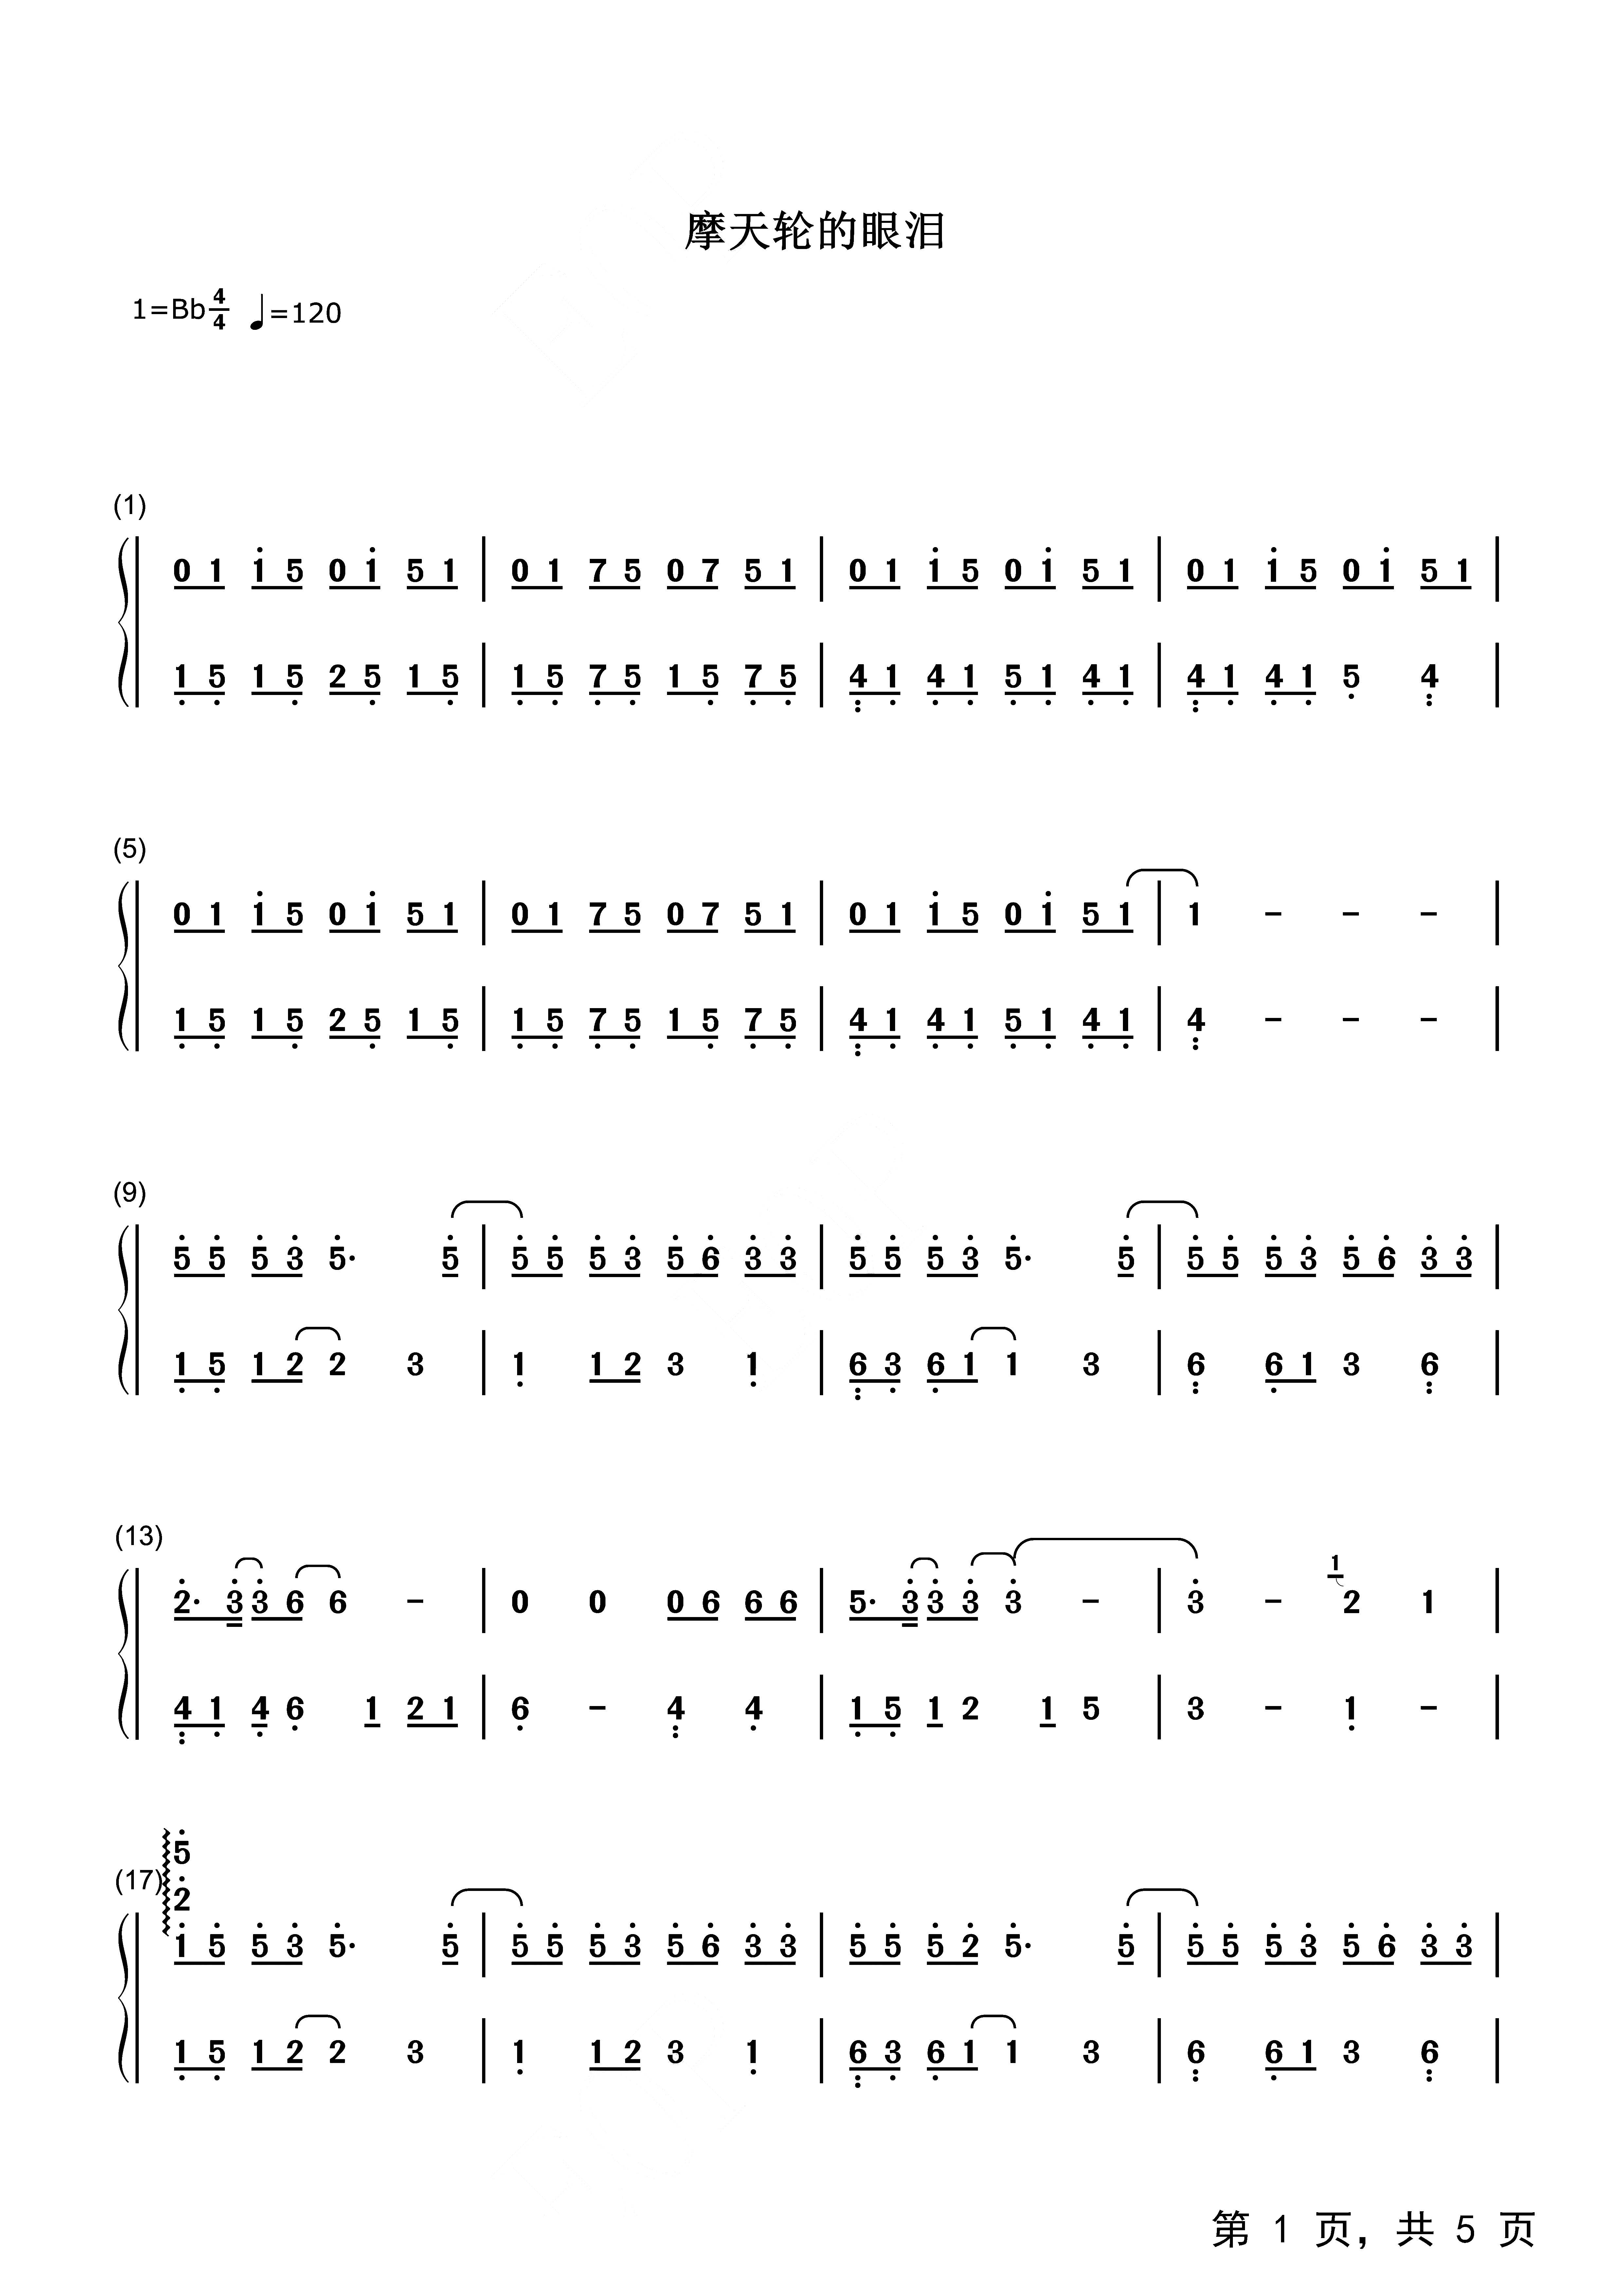 摩天轮的思念-超少年密码插曲-钢琴谱文件（五线谱、双手简谱、数字谱、Midi、PDF）免费下载